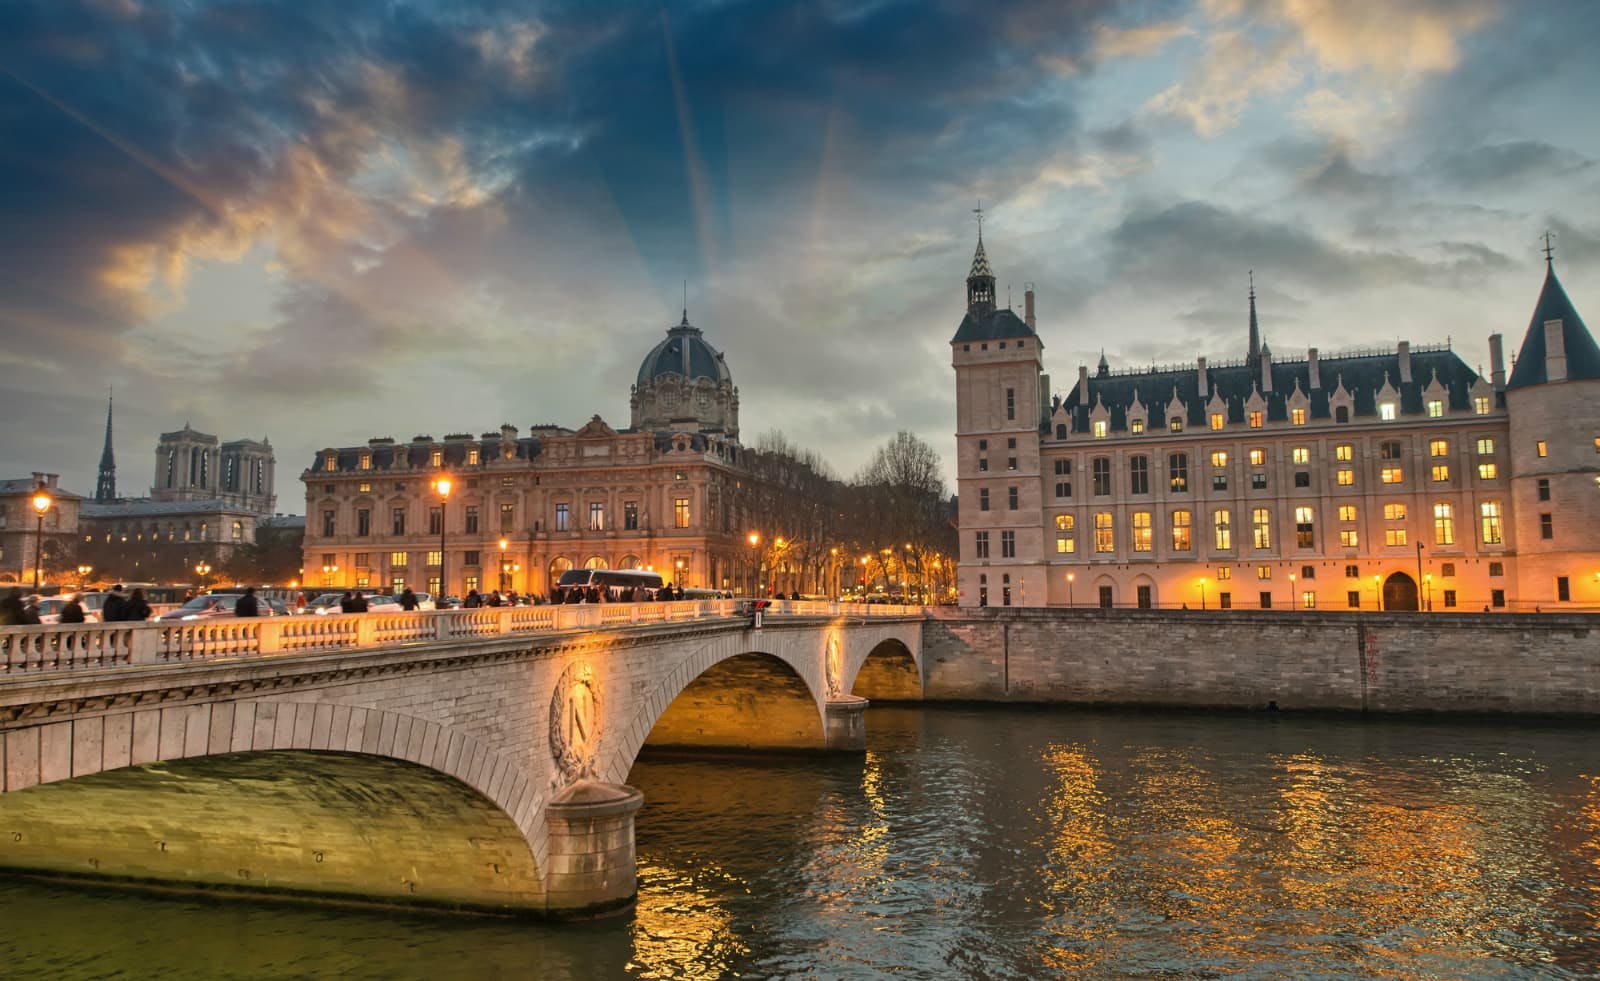 Historias de fantasmas y lugares encantados de París - Juego de acertijos por la ciudad